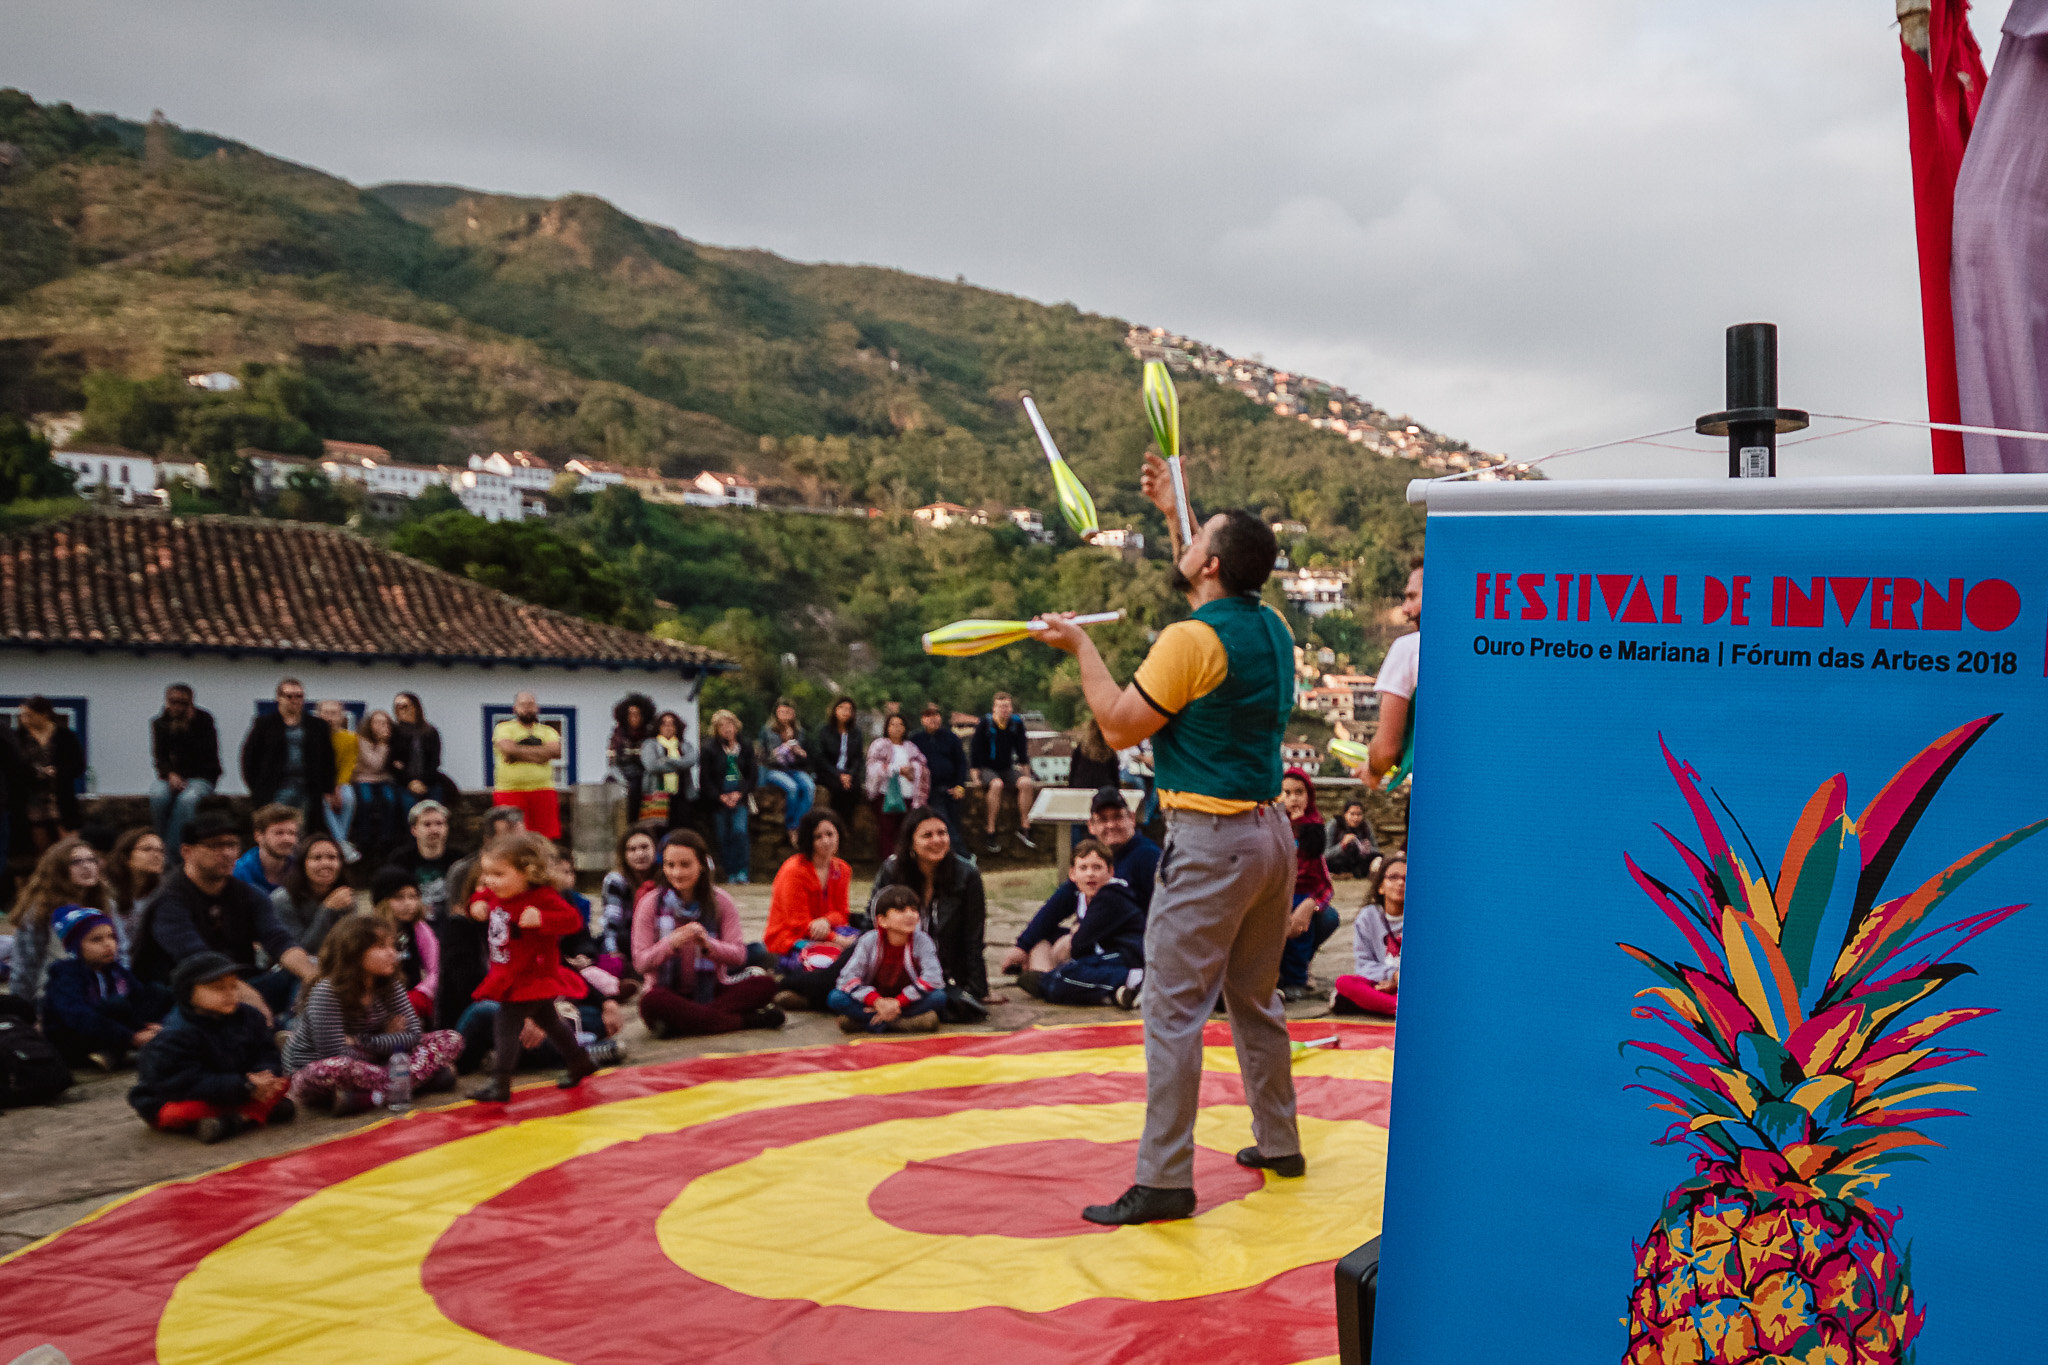 Festival de Inverno Ouro Preto, Mariana e João Monlevade abre edital para seleção de propostas de espetáculos